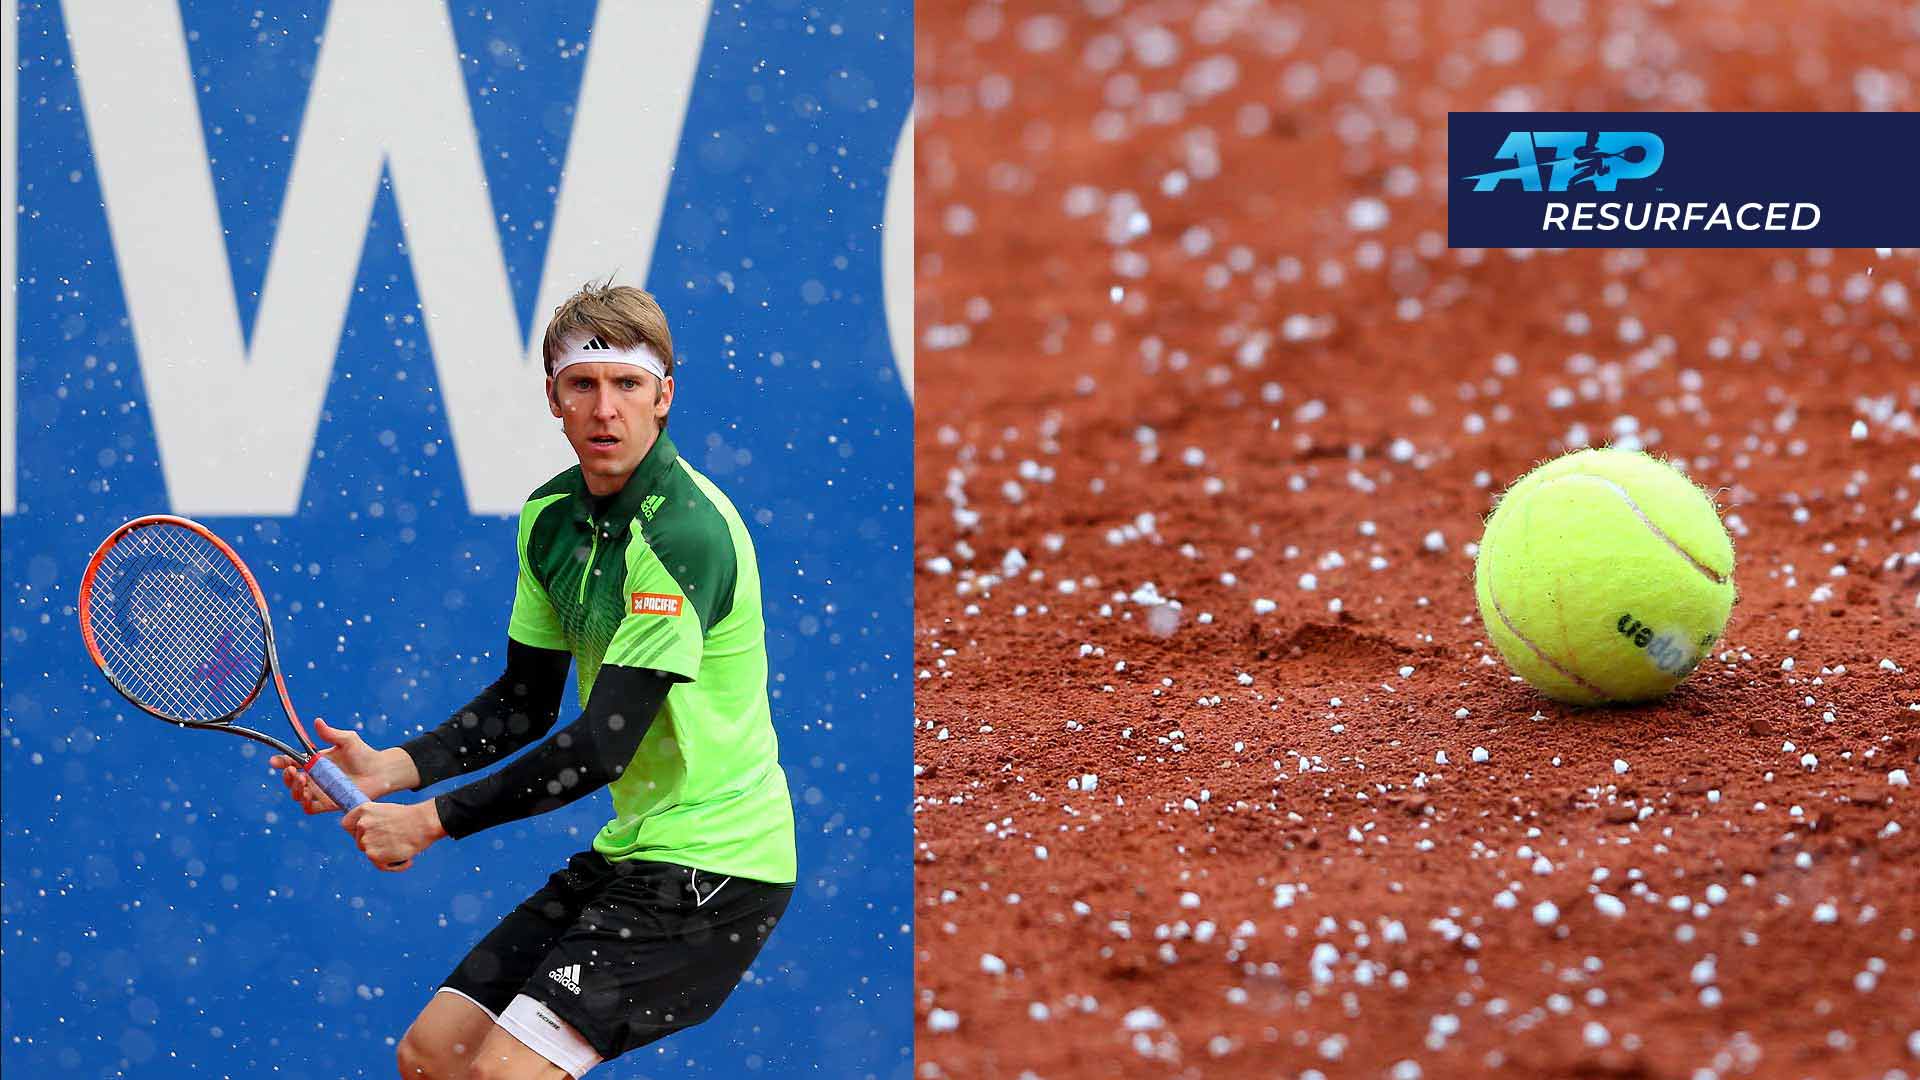 Tennis Atp Munich Online, SAVE 60%